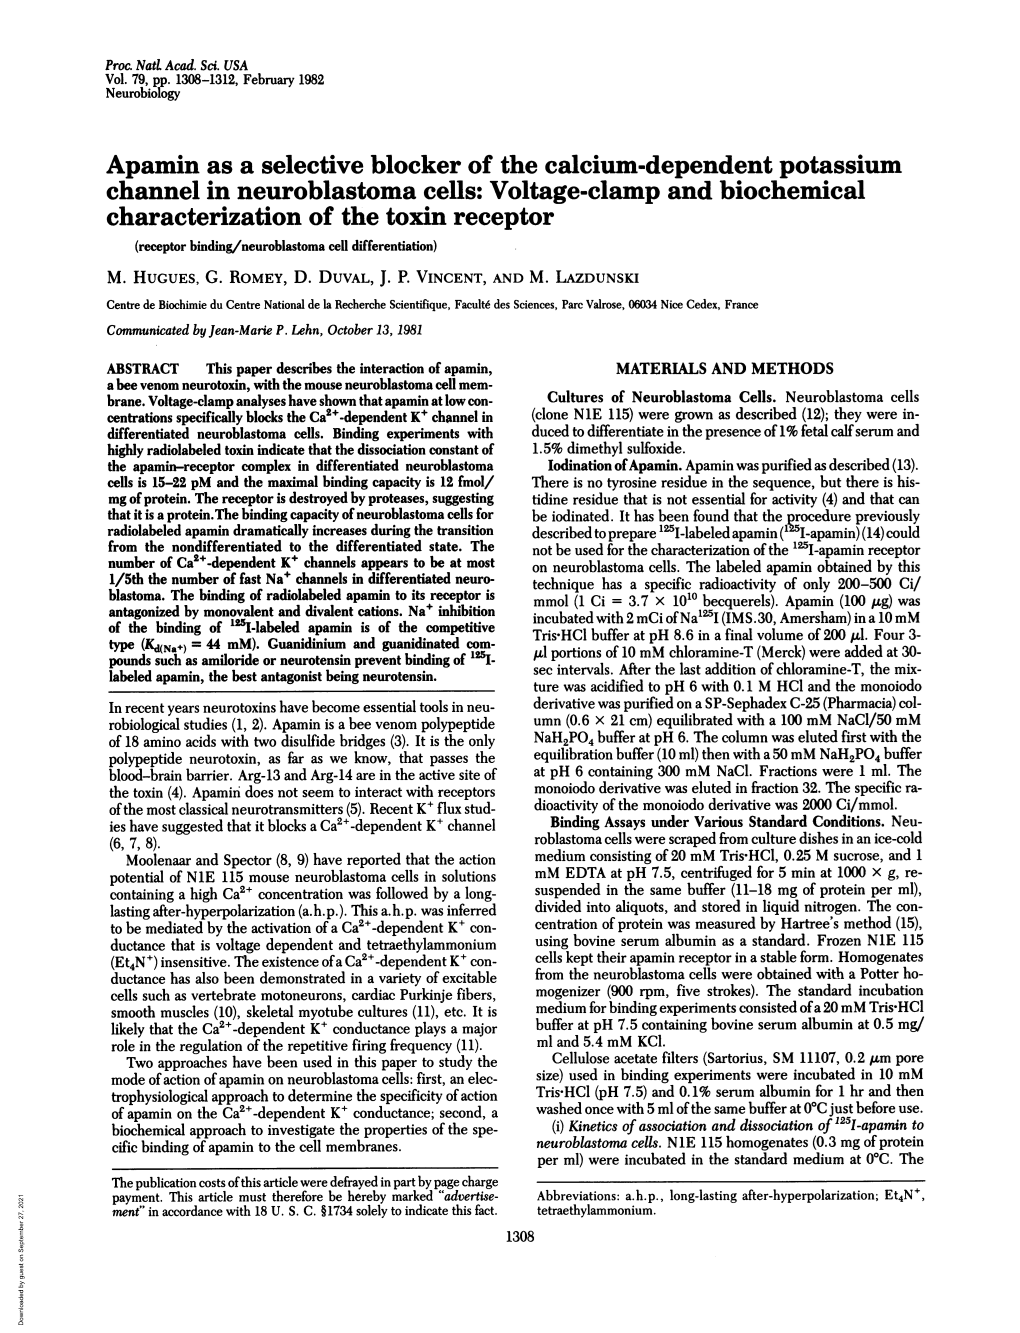 Apamin As a Selective Blocker of the Calcium-Dependent Potassium